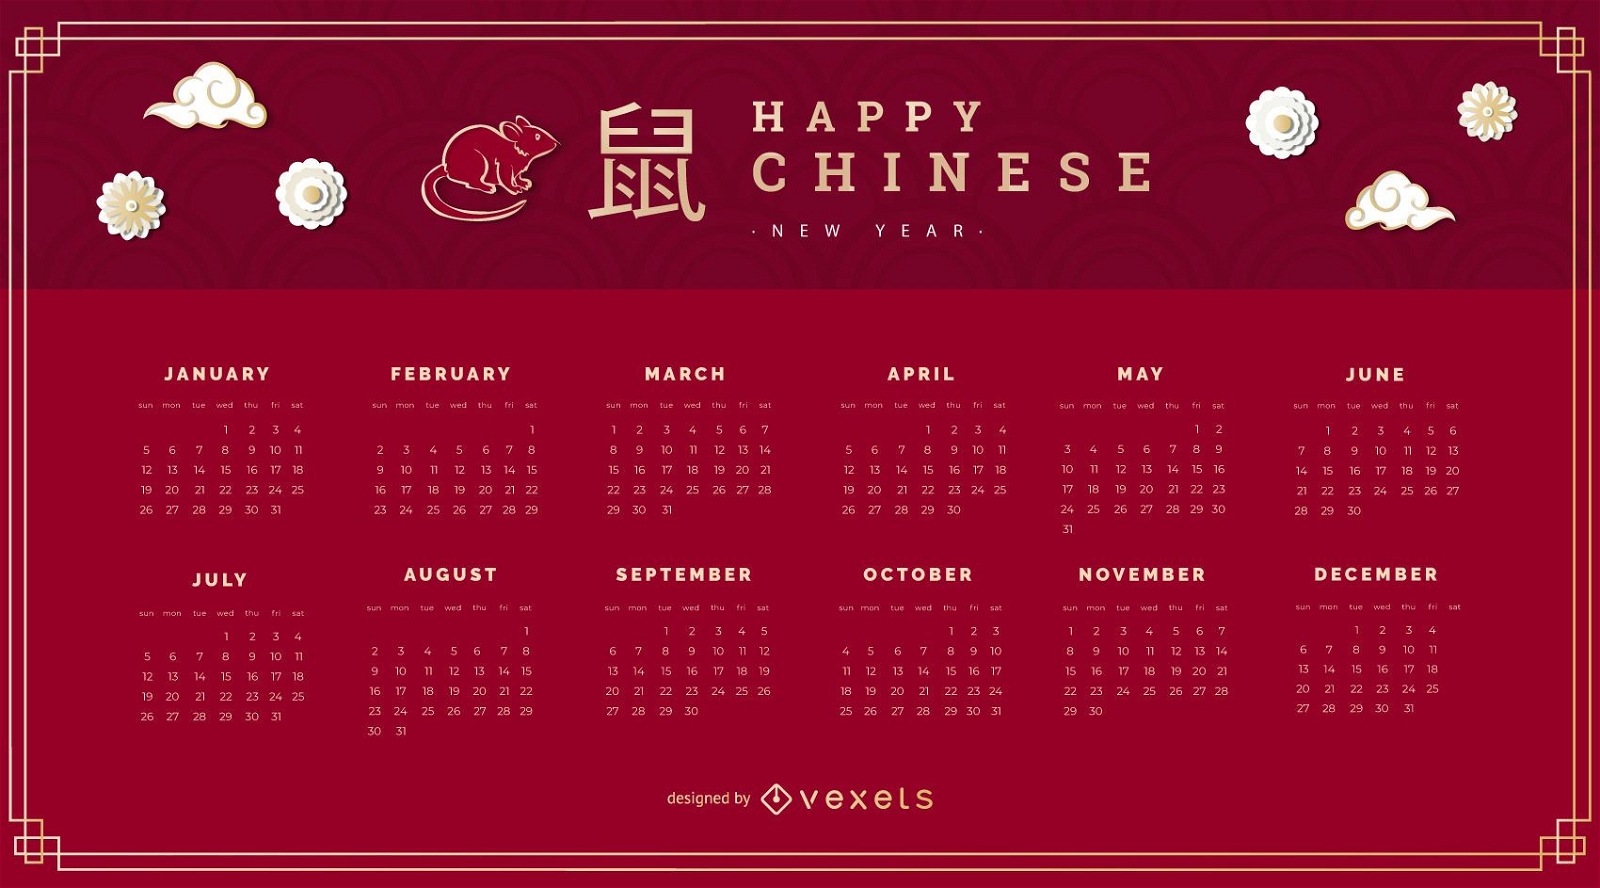 Calendário do ano novo chinês de 2020